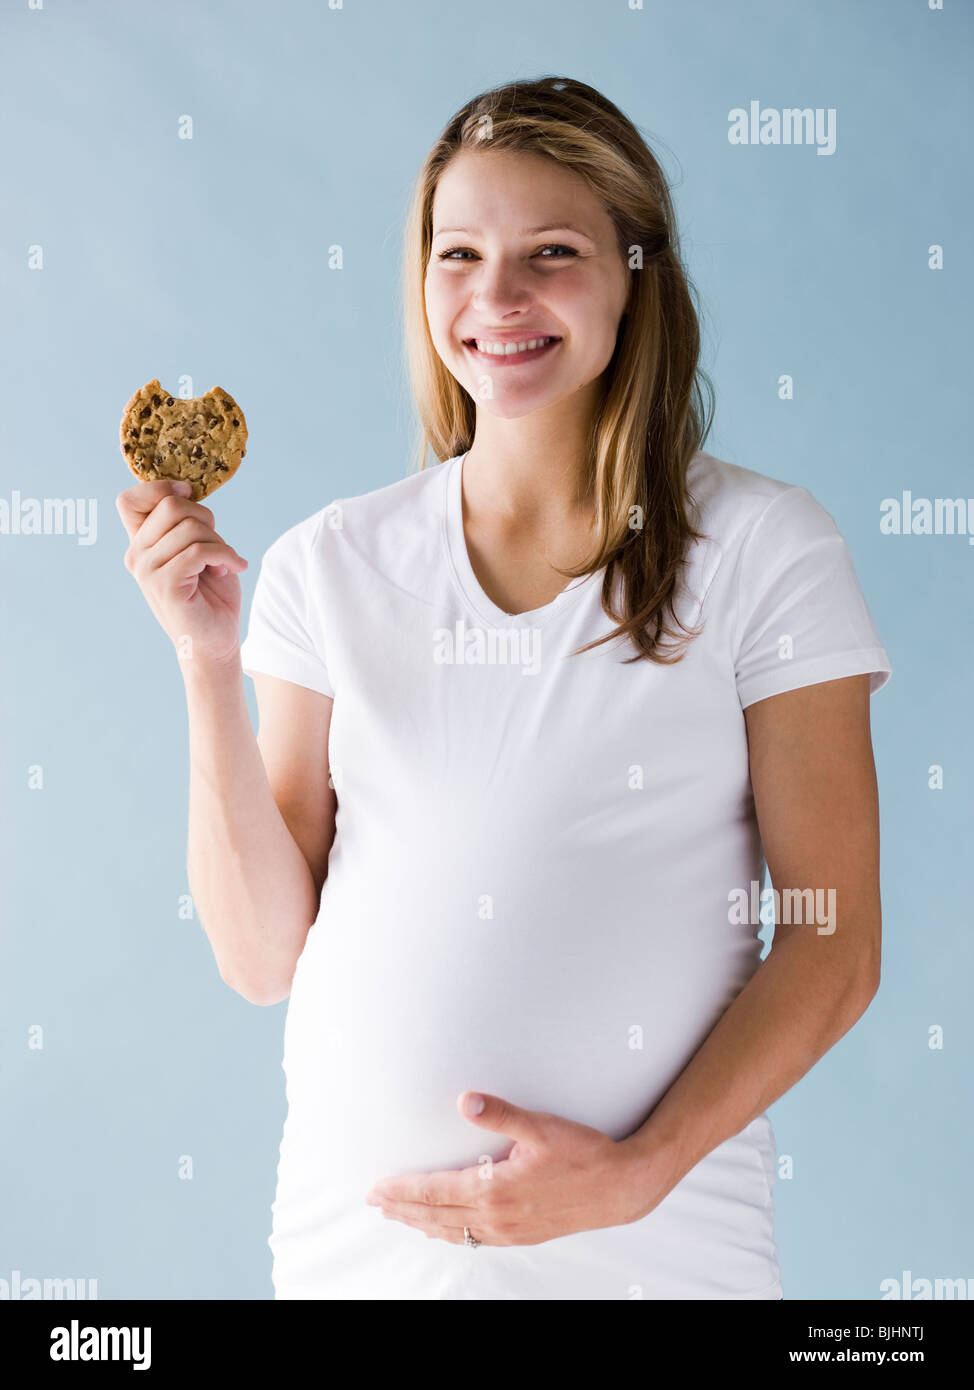 Resultado de imagen de embarazada comiendo gluten